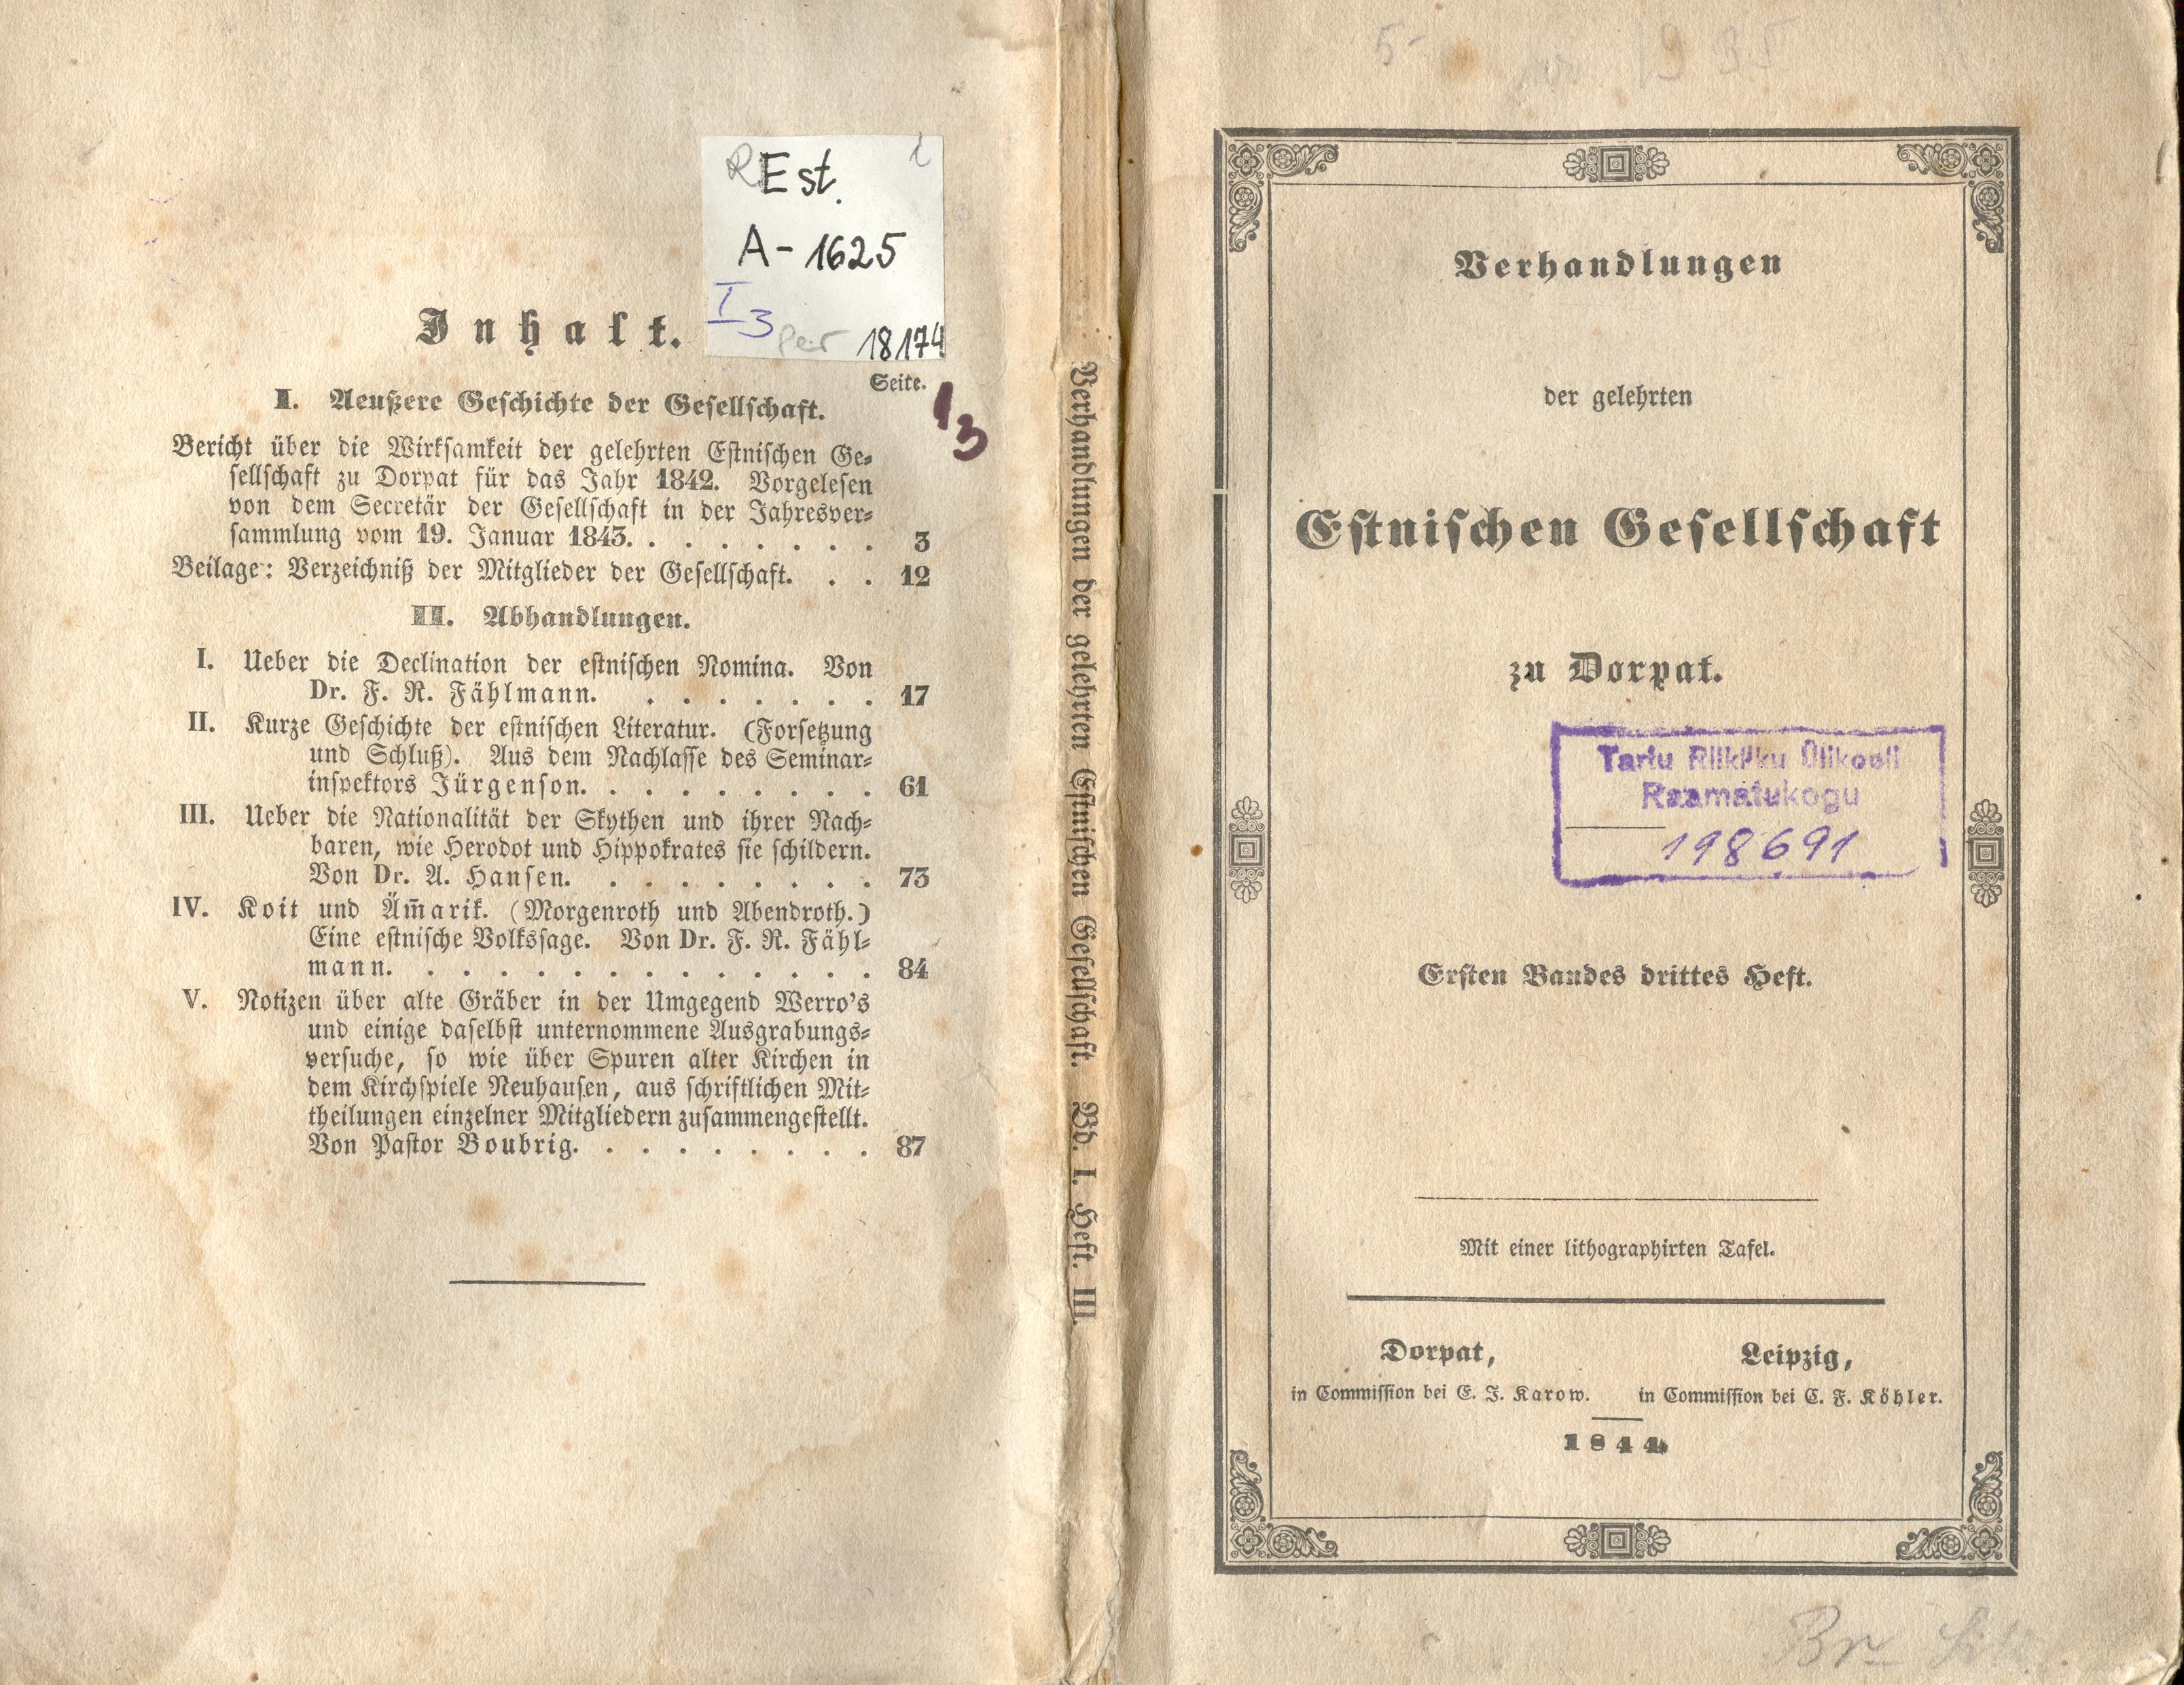 Verhandlungen der GEG [1844] [1/3] (1844) | 1. Front cover